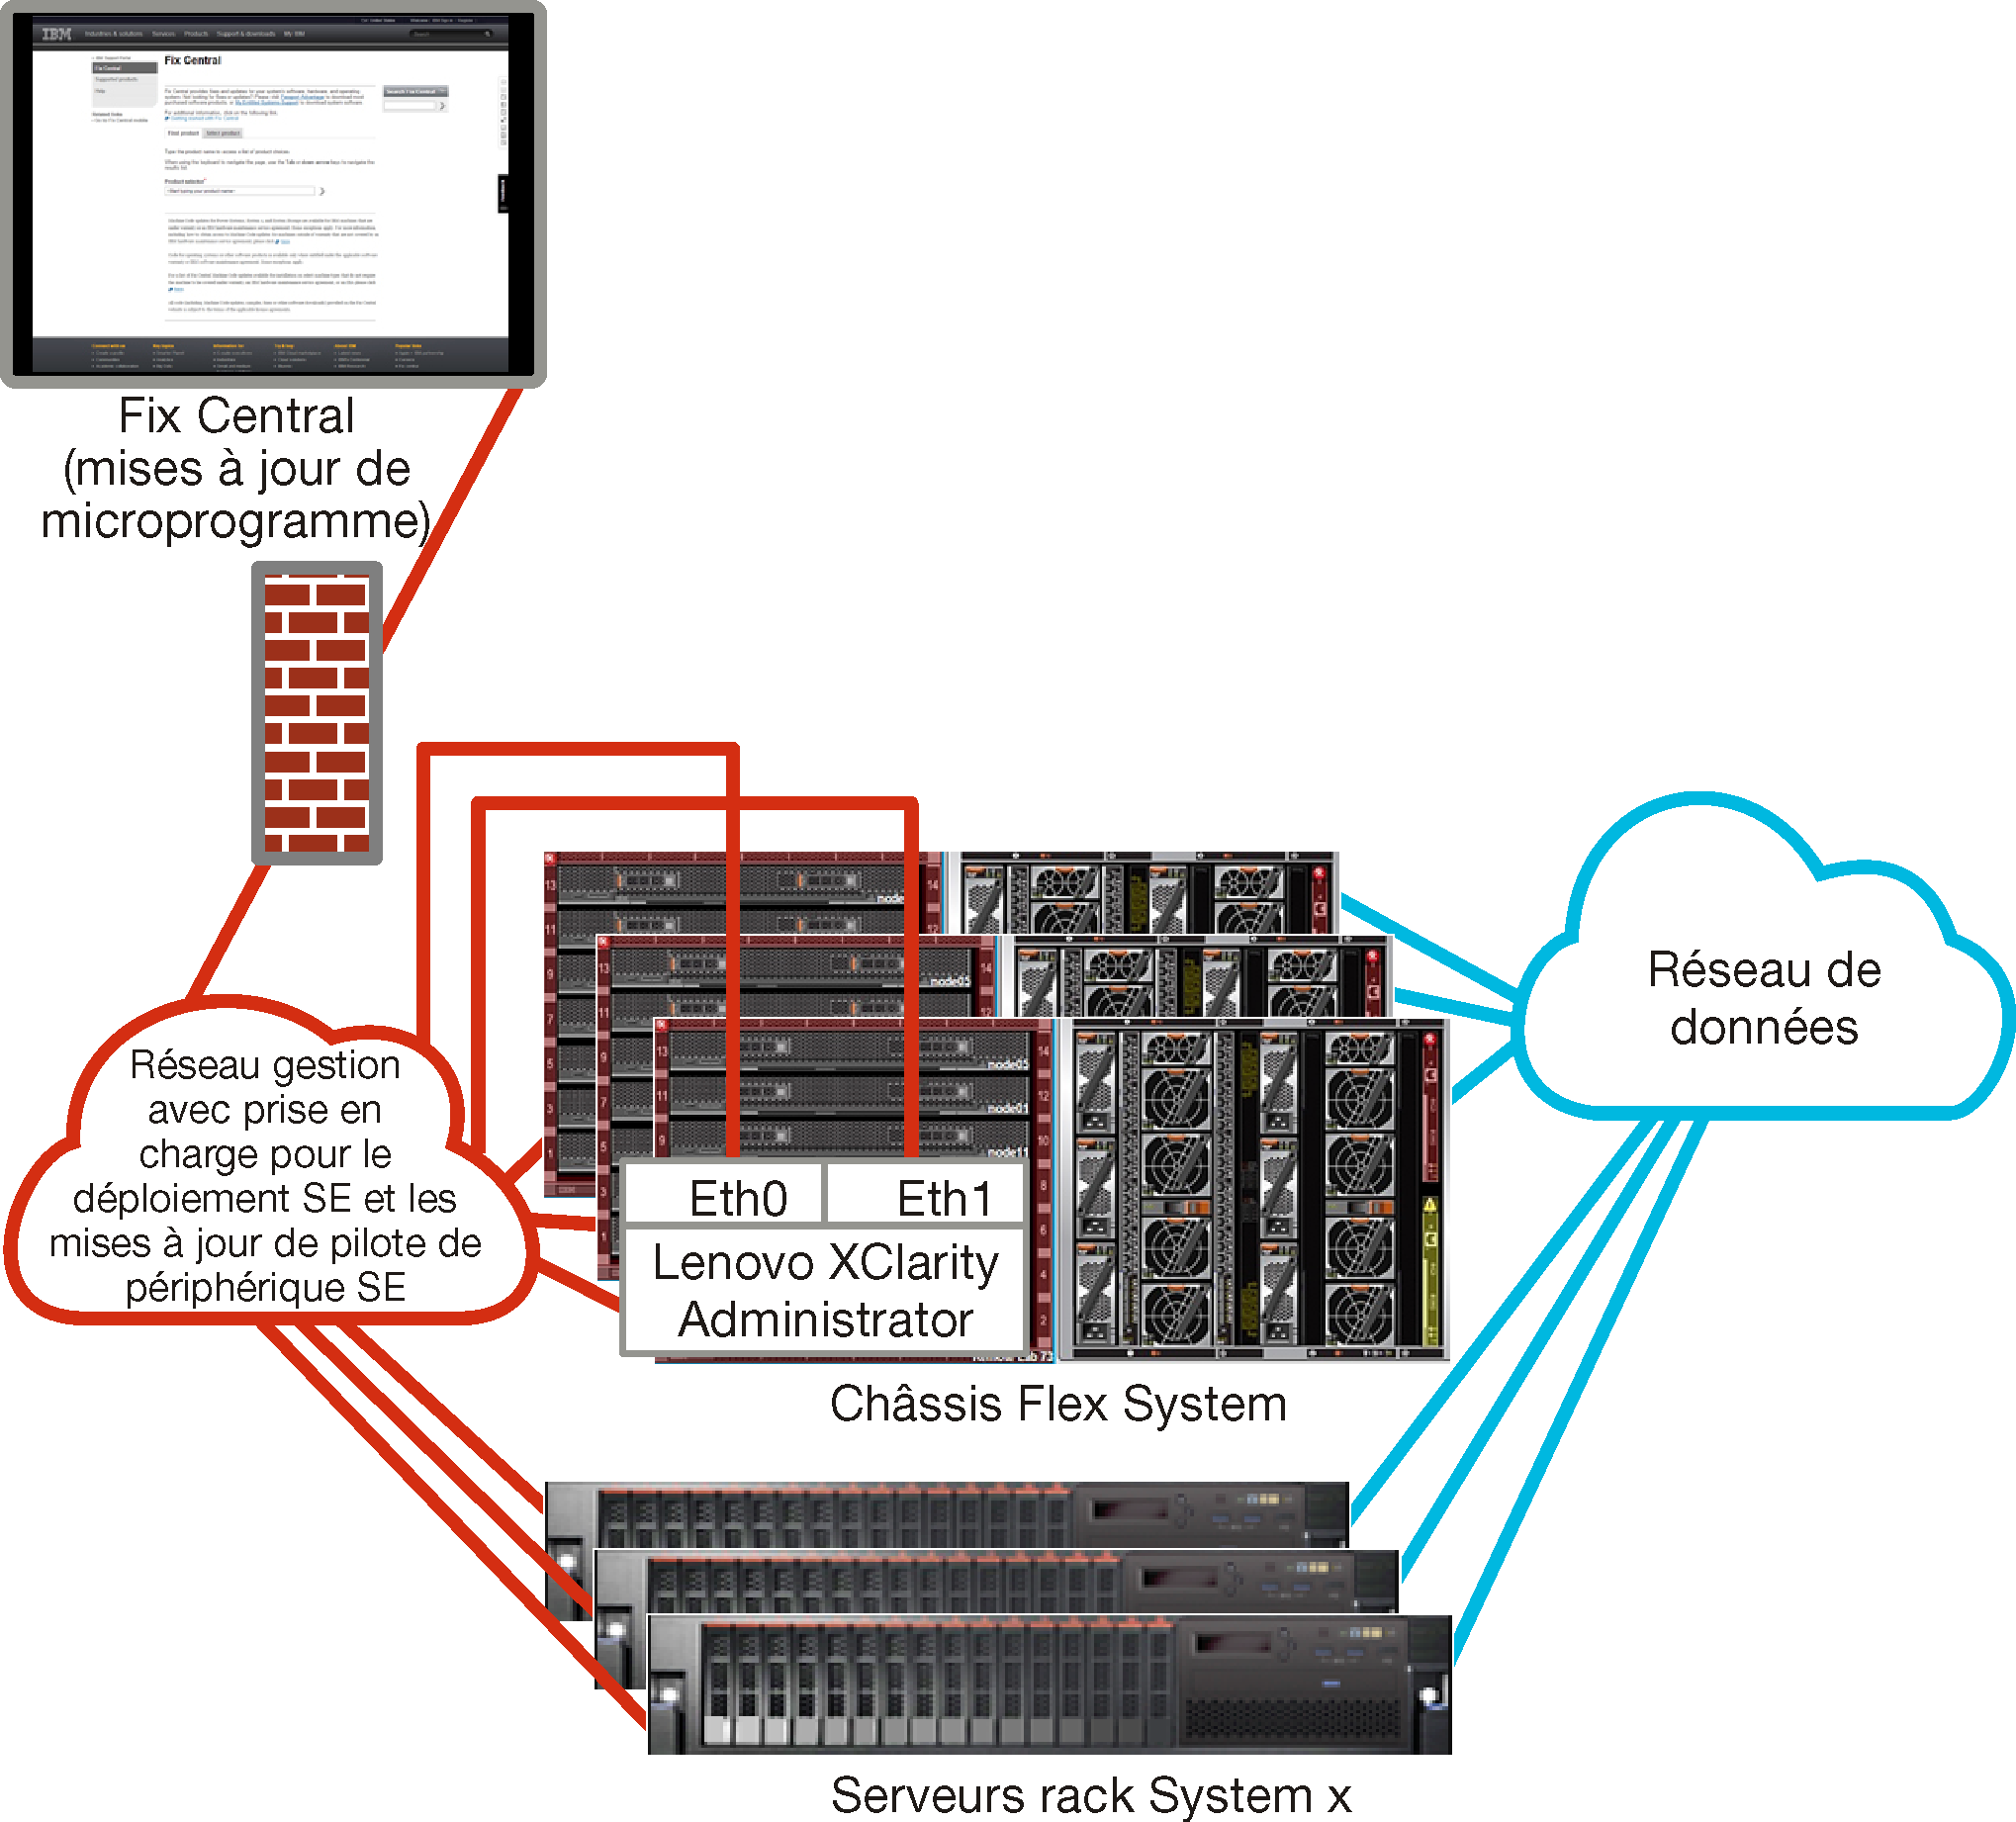 Illustration d'une vue de haut niveau de la gestion pratiquement distincte et des réseaux de données avec le réseau du système d'exploitation dans le cadre du réseau de gestion